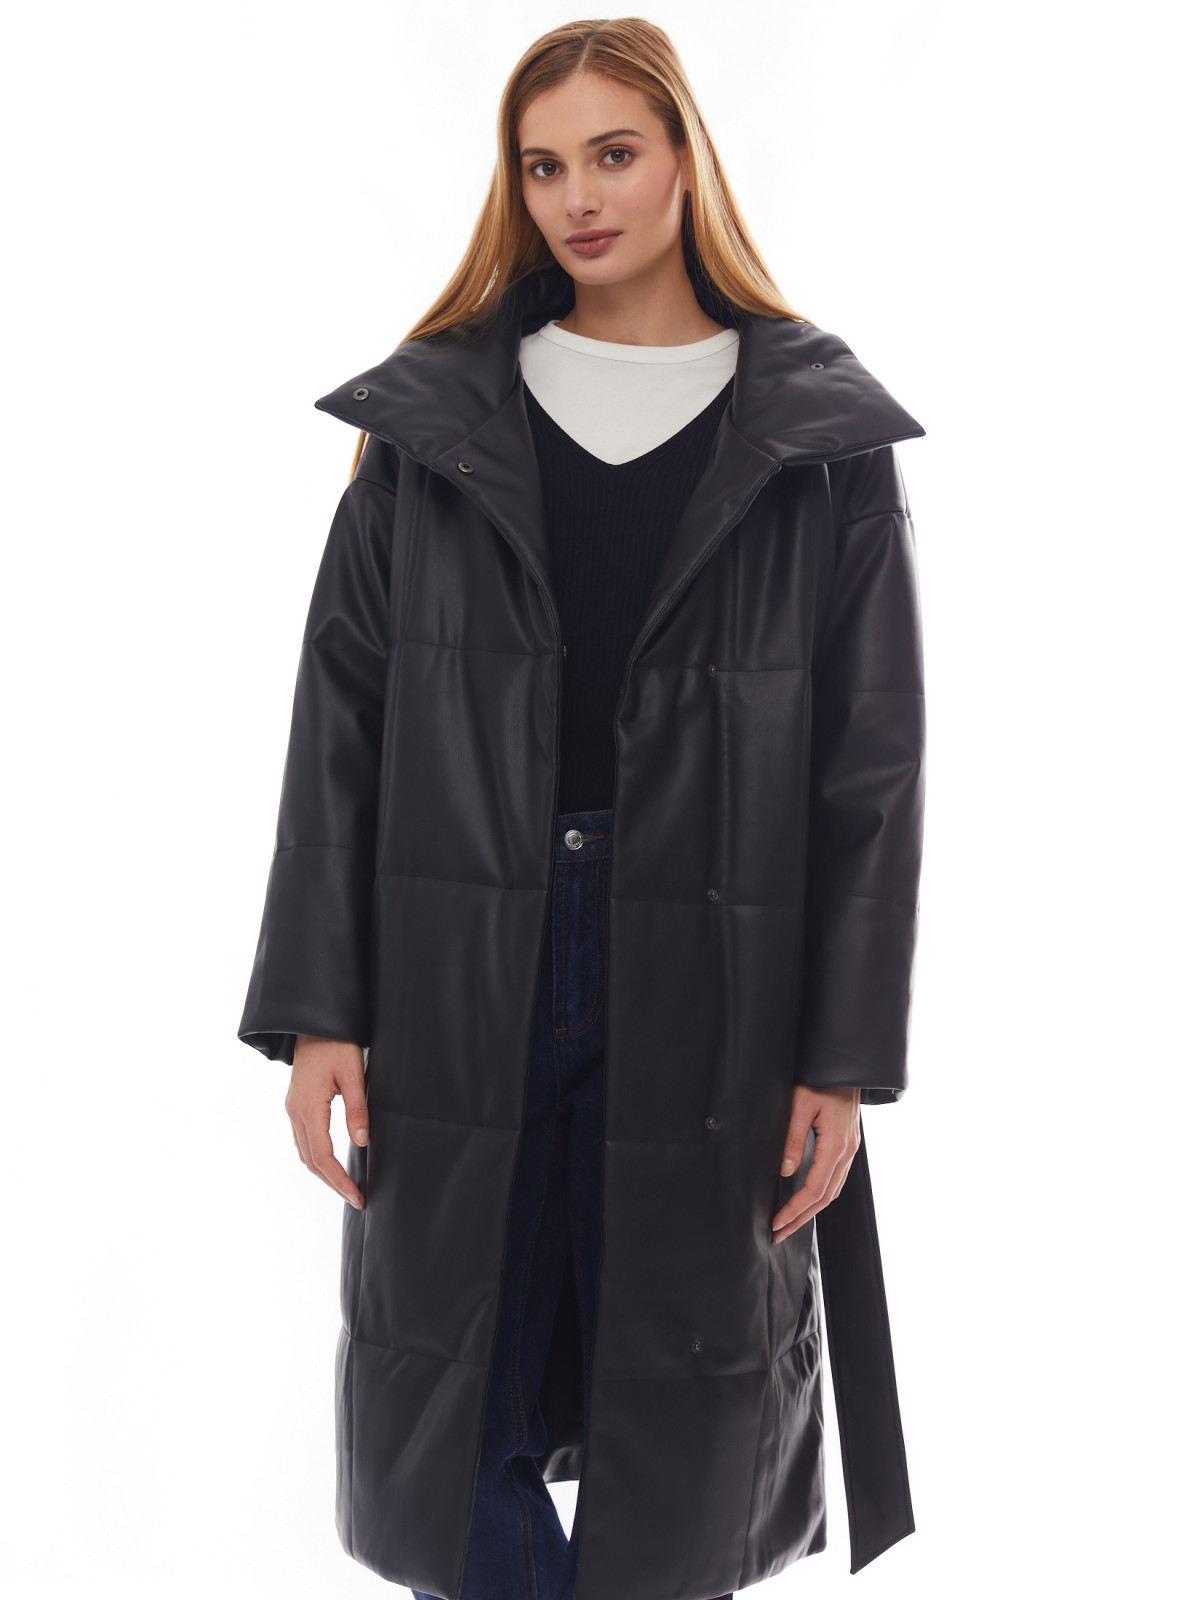 Тёплое пальто из экокожи на синтепоне с воротником-стойкой и поясом zolla 02412522N034, цвет черный, размер XS